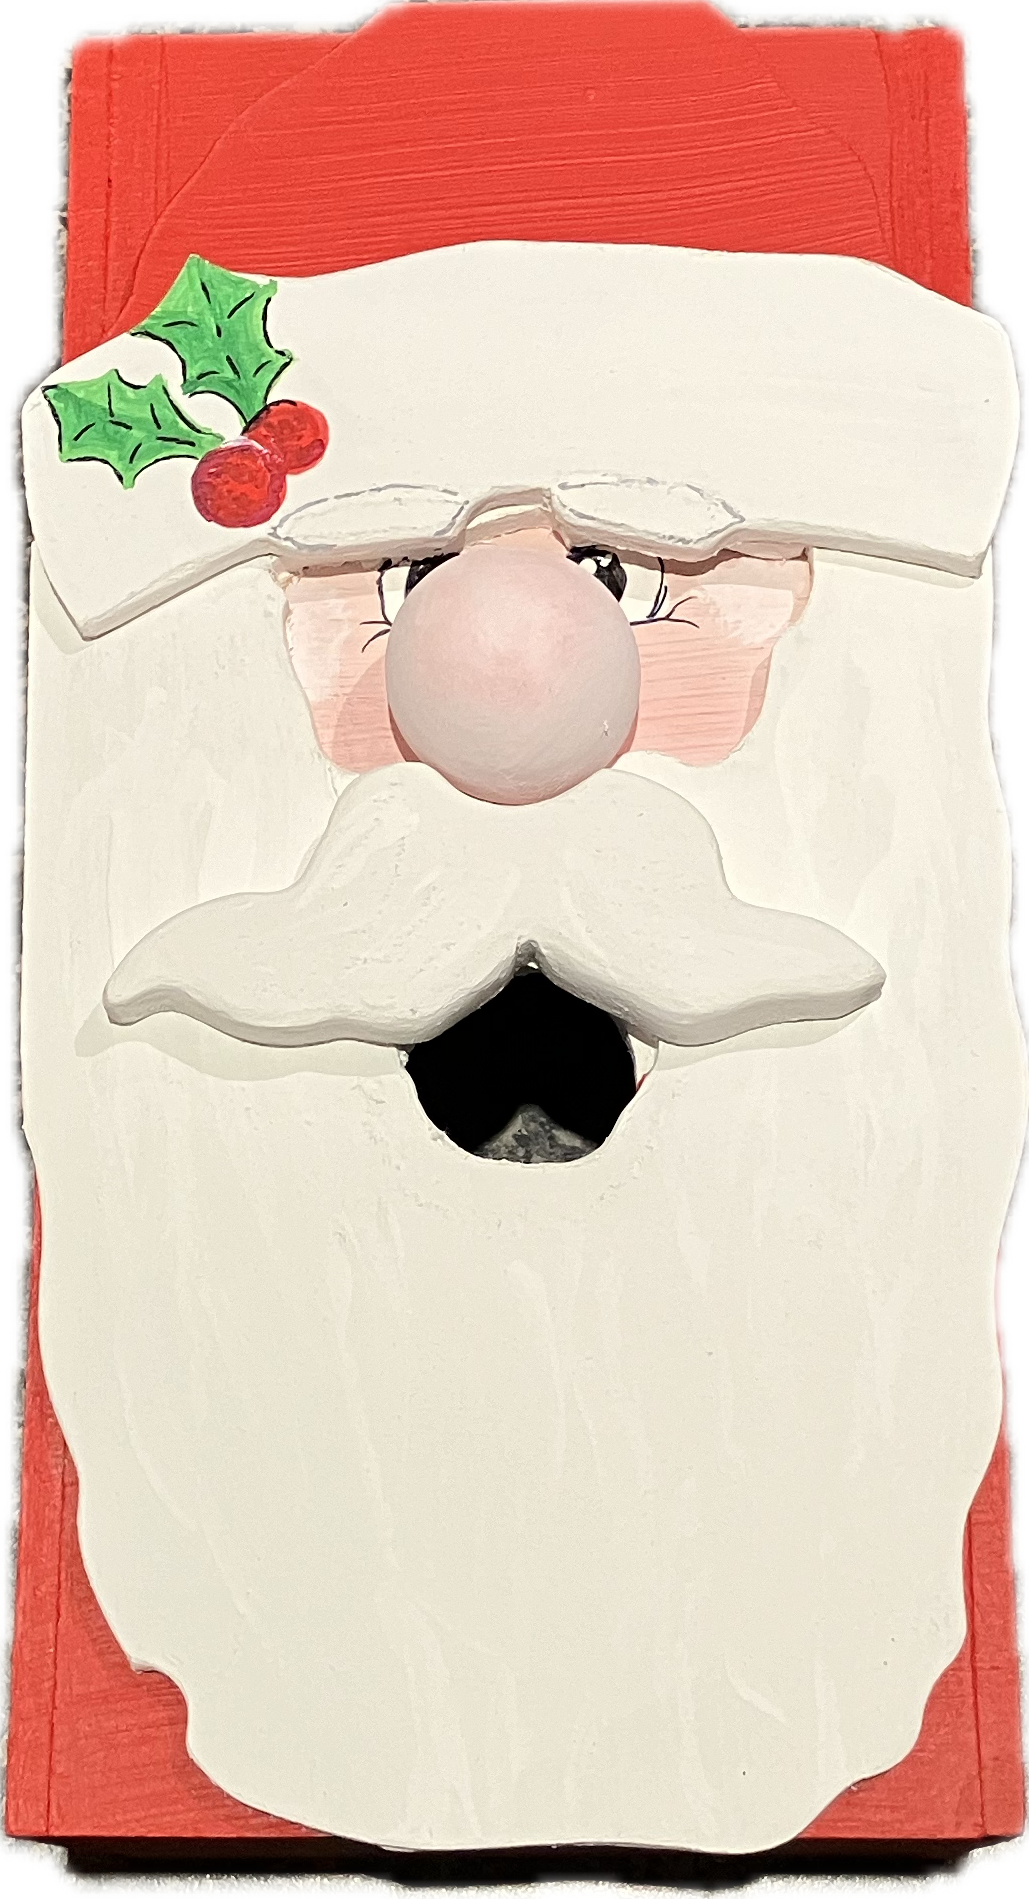 Santa Claus Tissue box cover